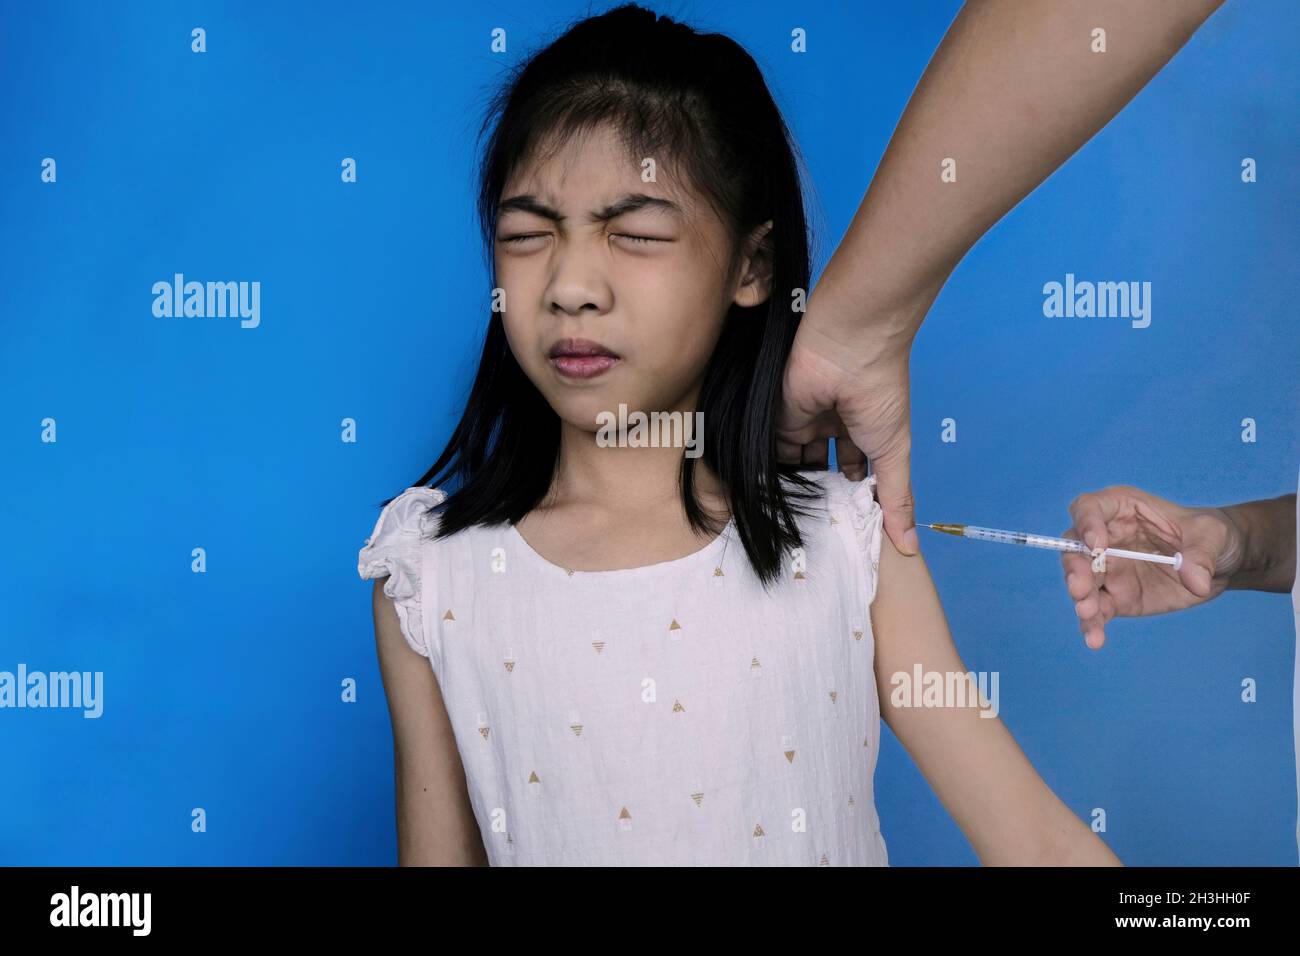 Une jolie jeune fille asiatique en robe blanche à recevoir un vaccin contre la grippe sur son épaule par un médecin.Fille se sentant peur à l'hôpital, la fermant Banque D'Images